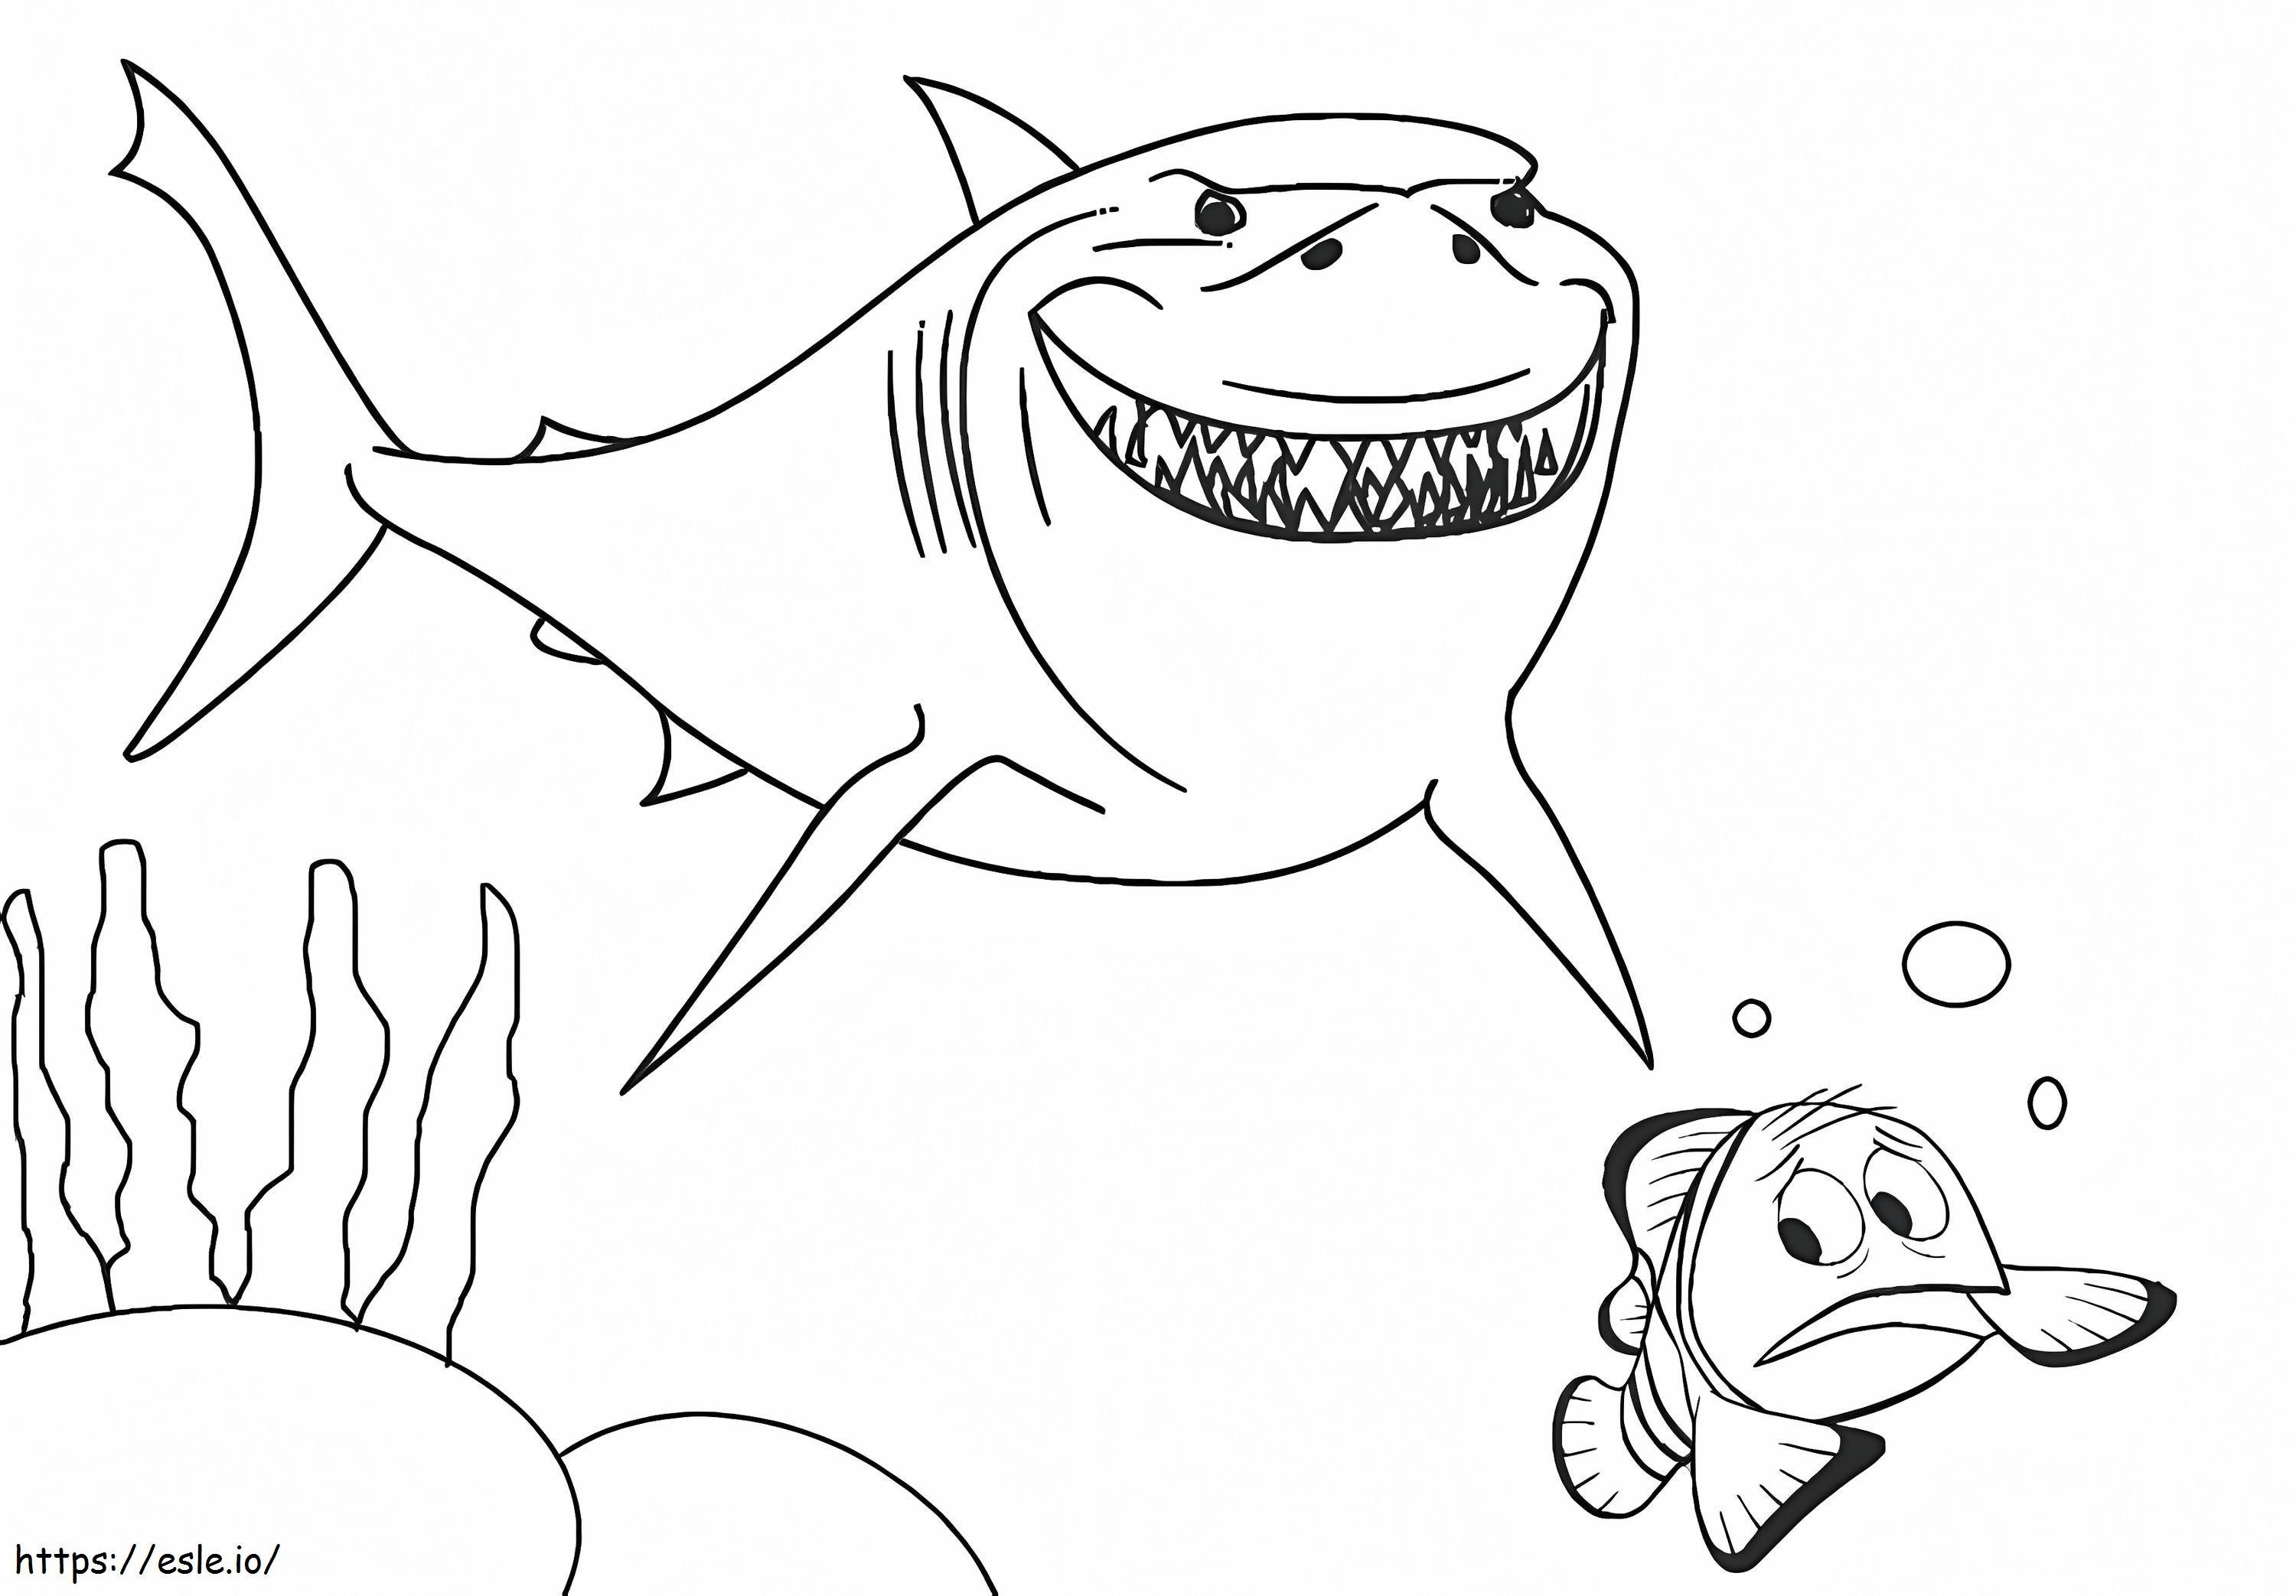 Köpekbalığı ve Nemo boyama